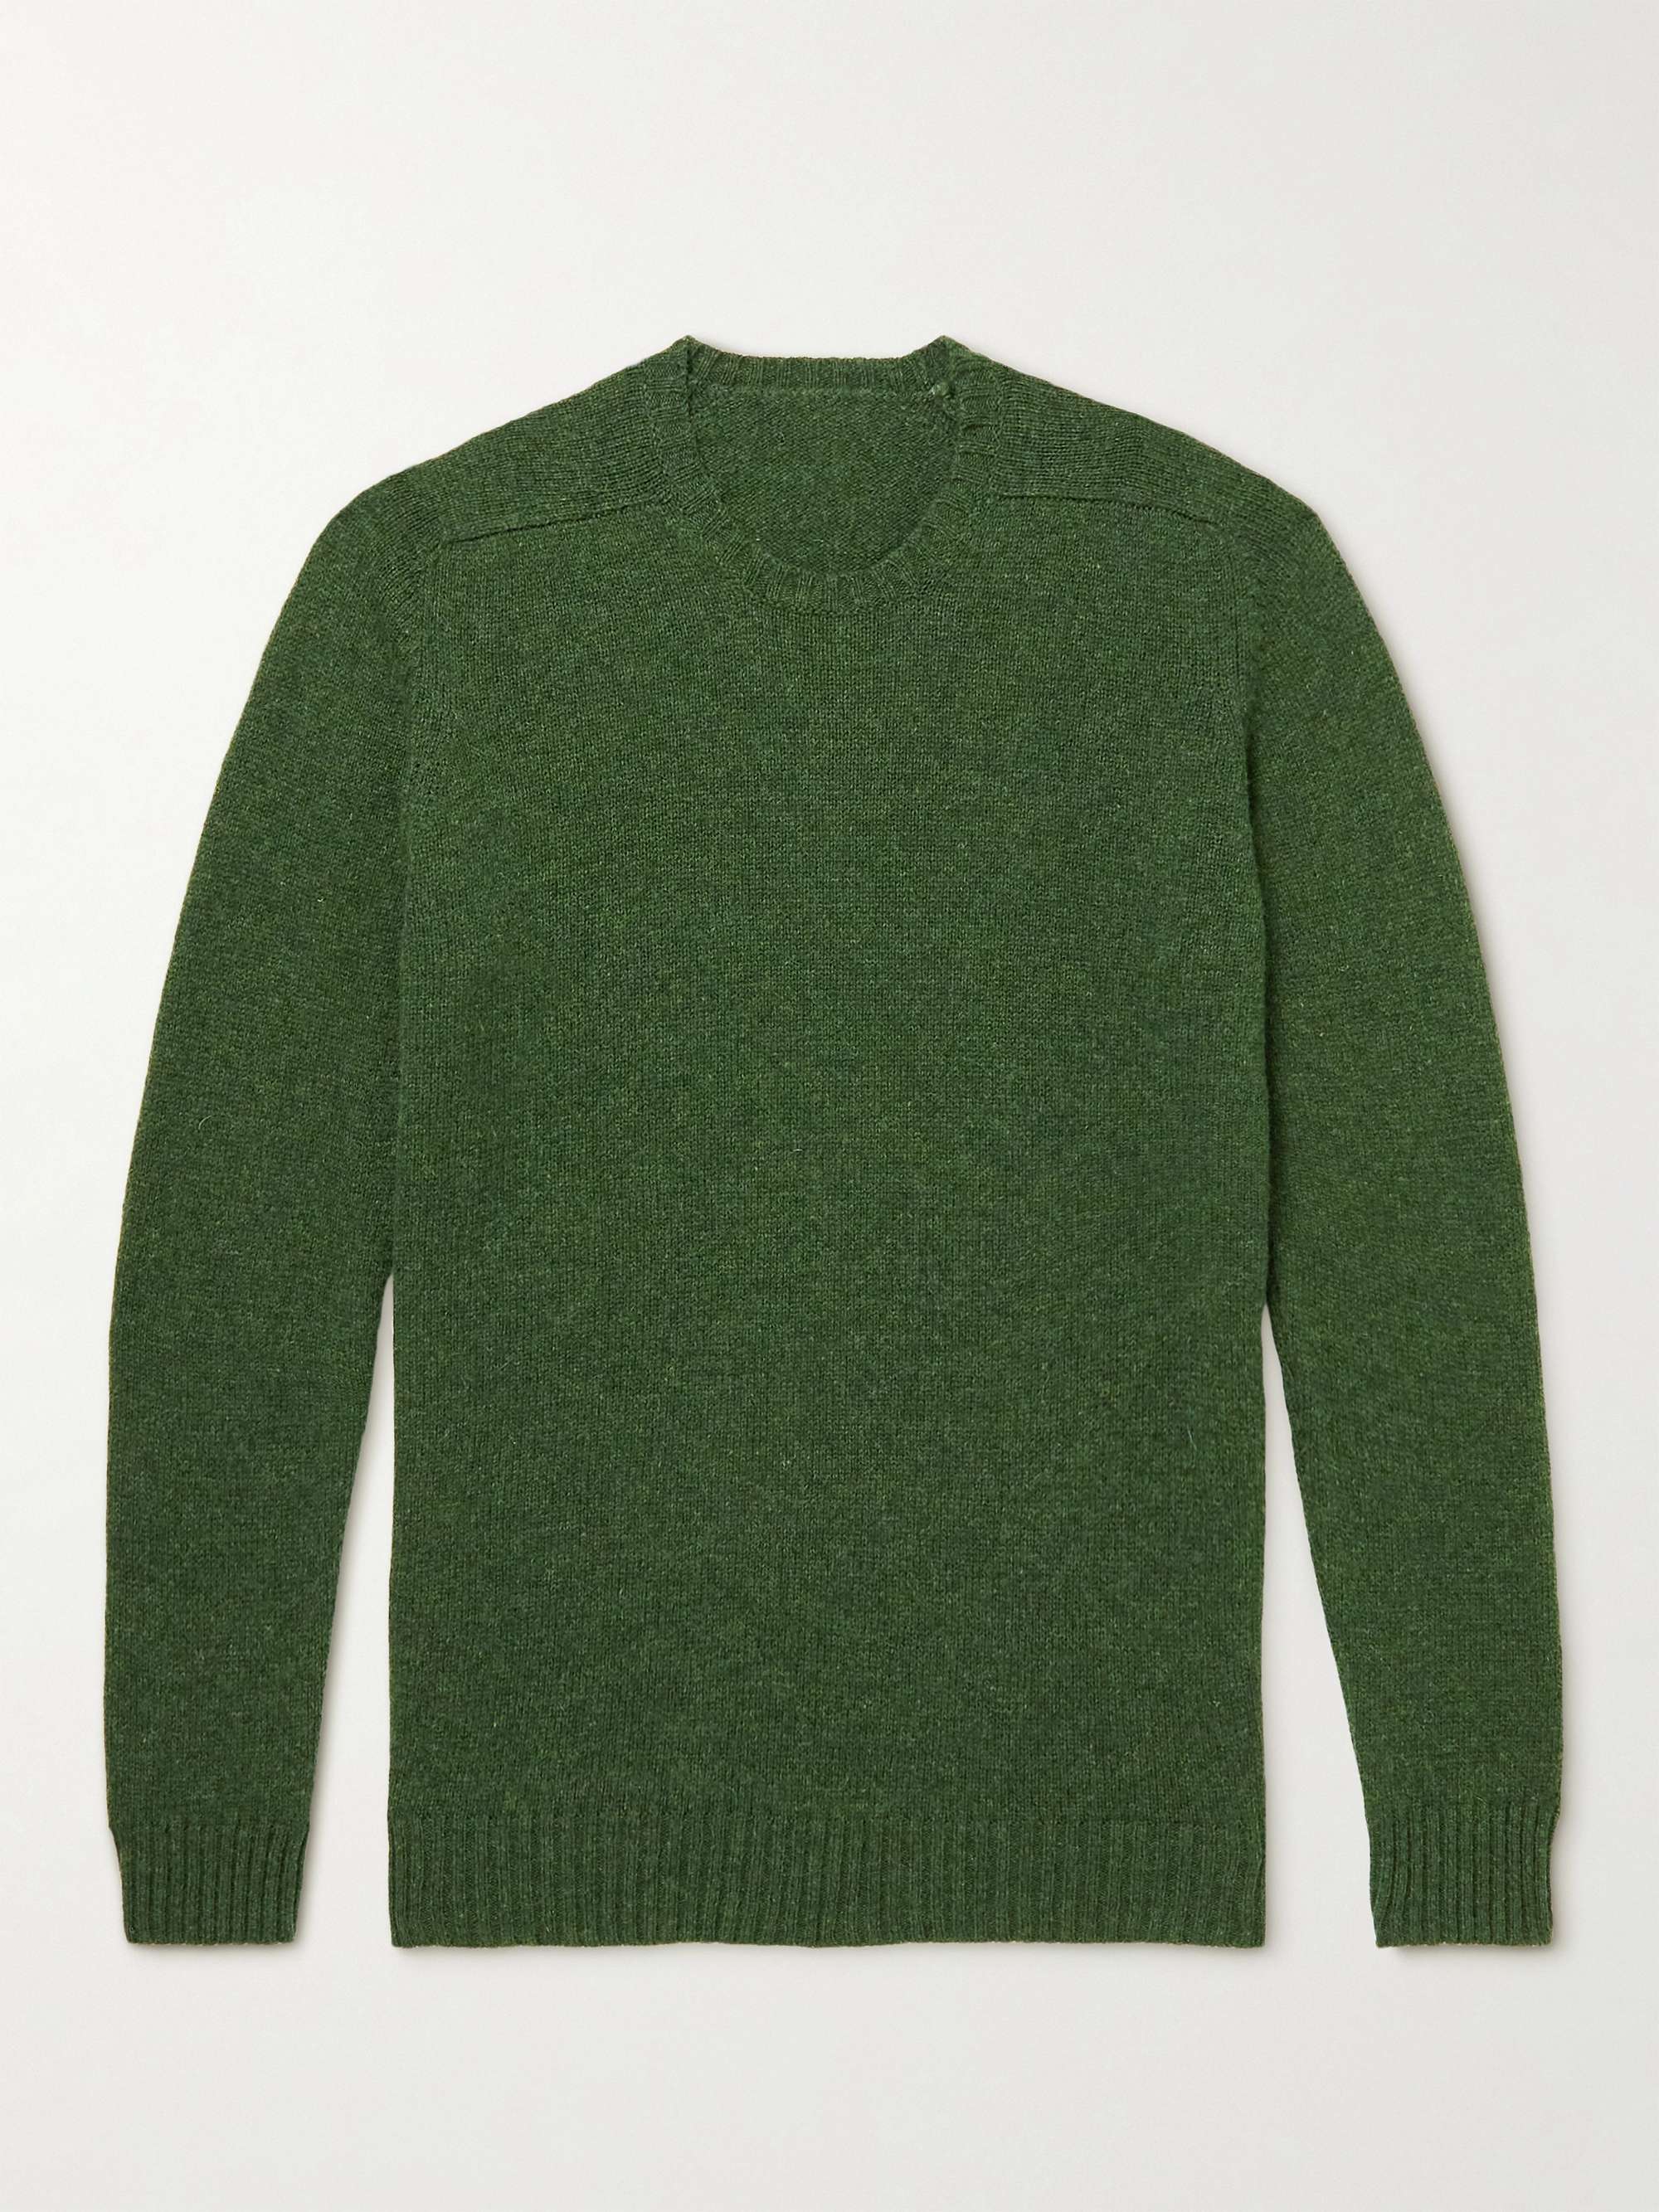 ANDERSON & SHEPPARD Shetland Wool Sweater